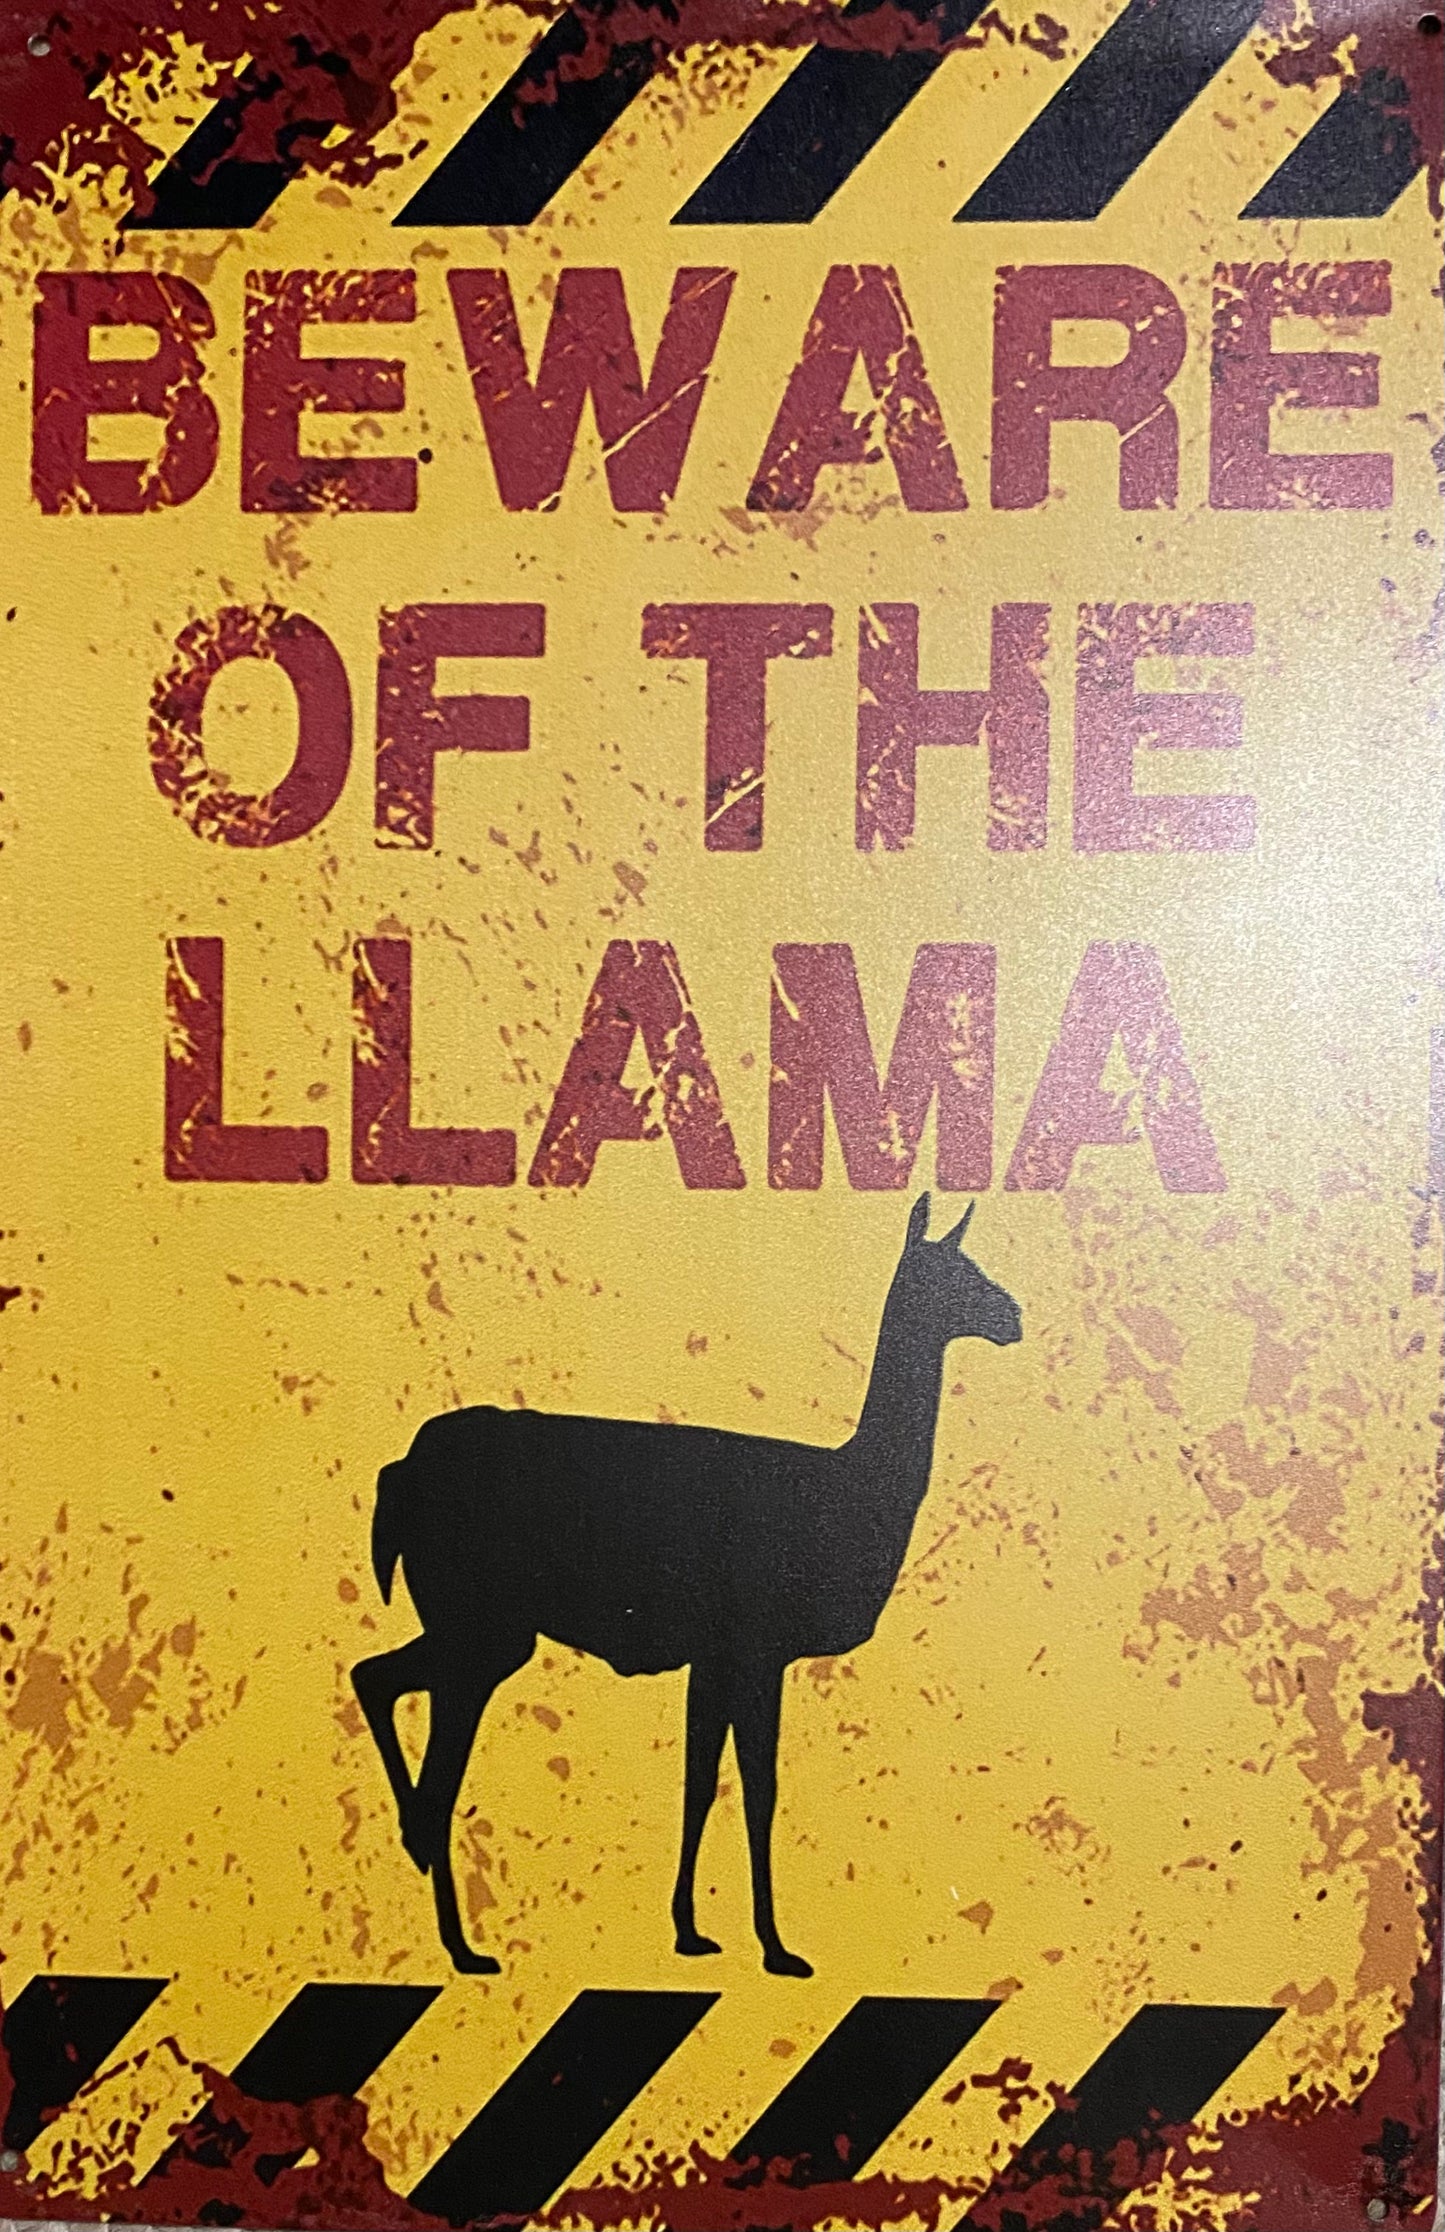 Beware of the llama